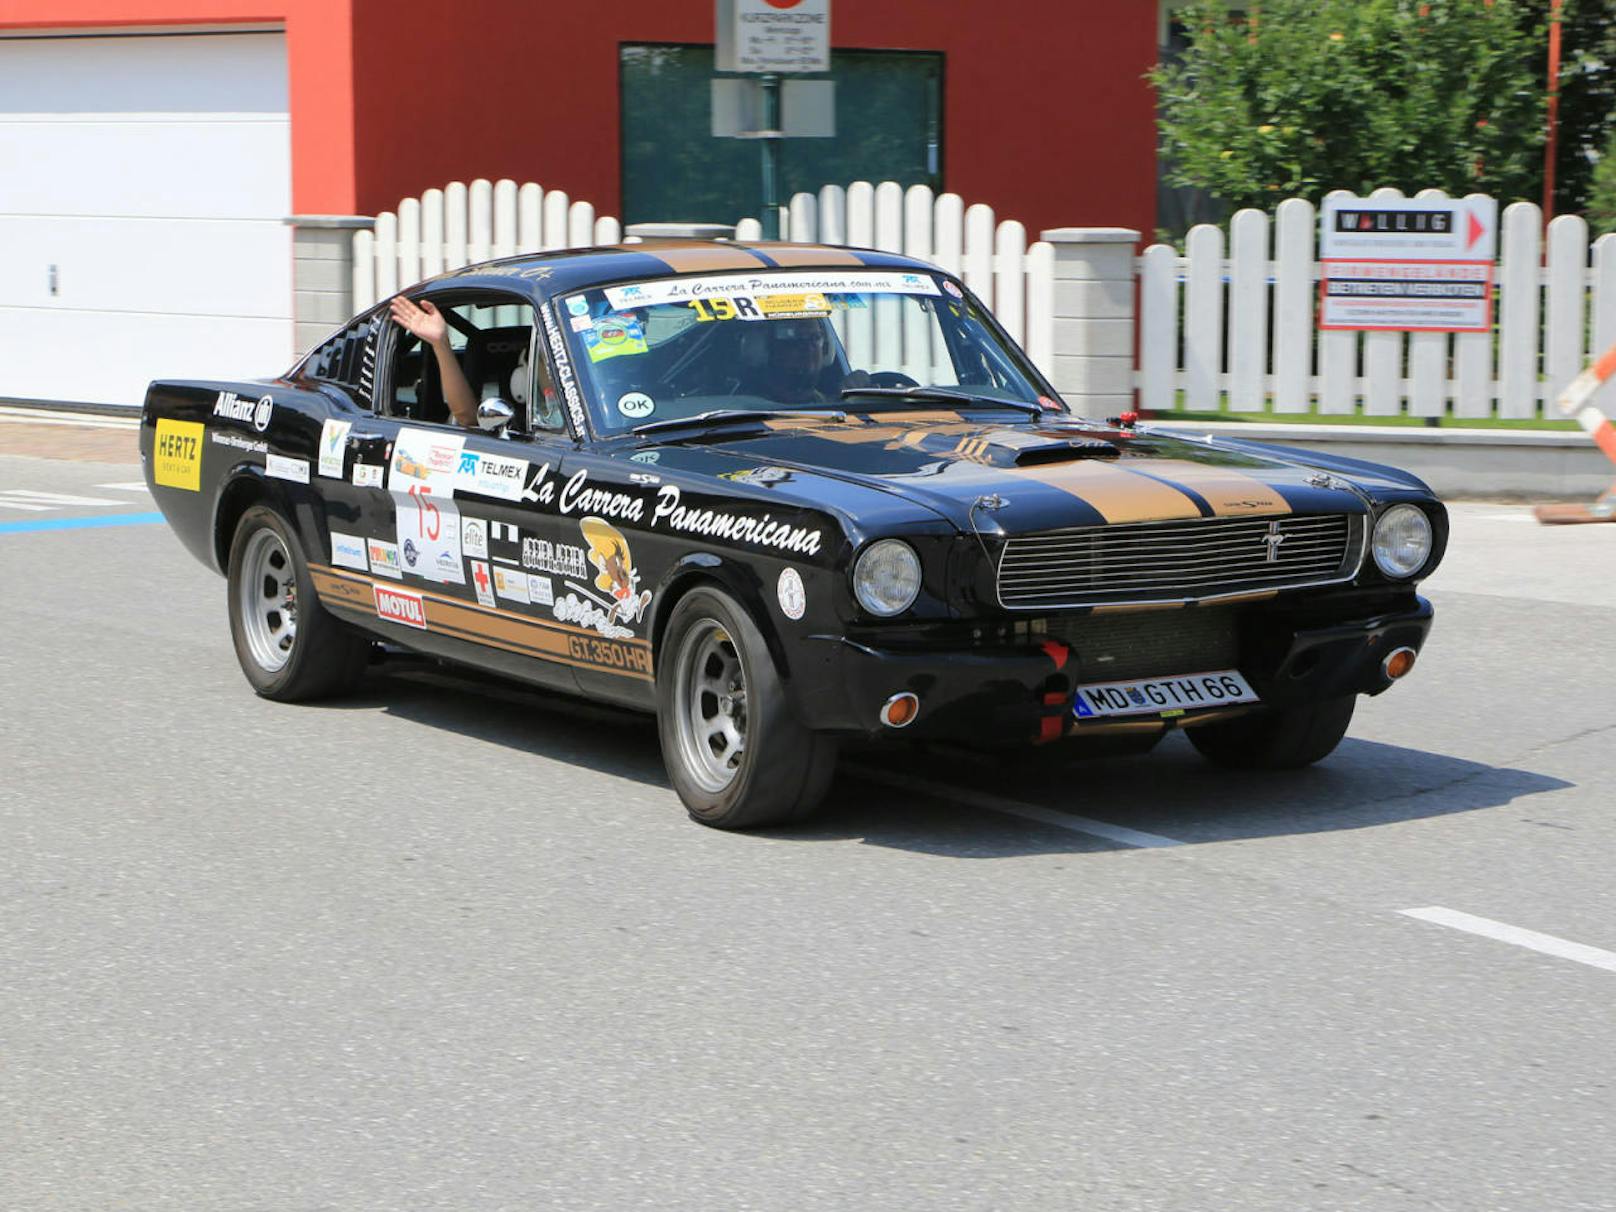 Der Mustang war beim Grand Prix von Gröbming unterwegs